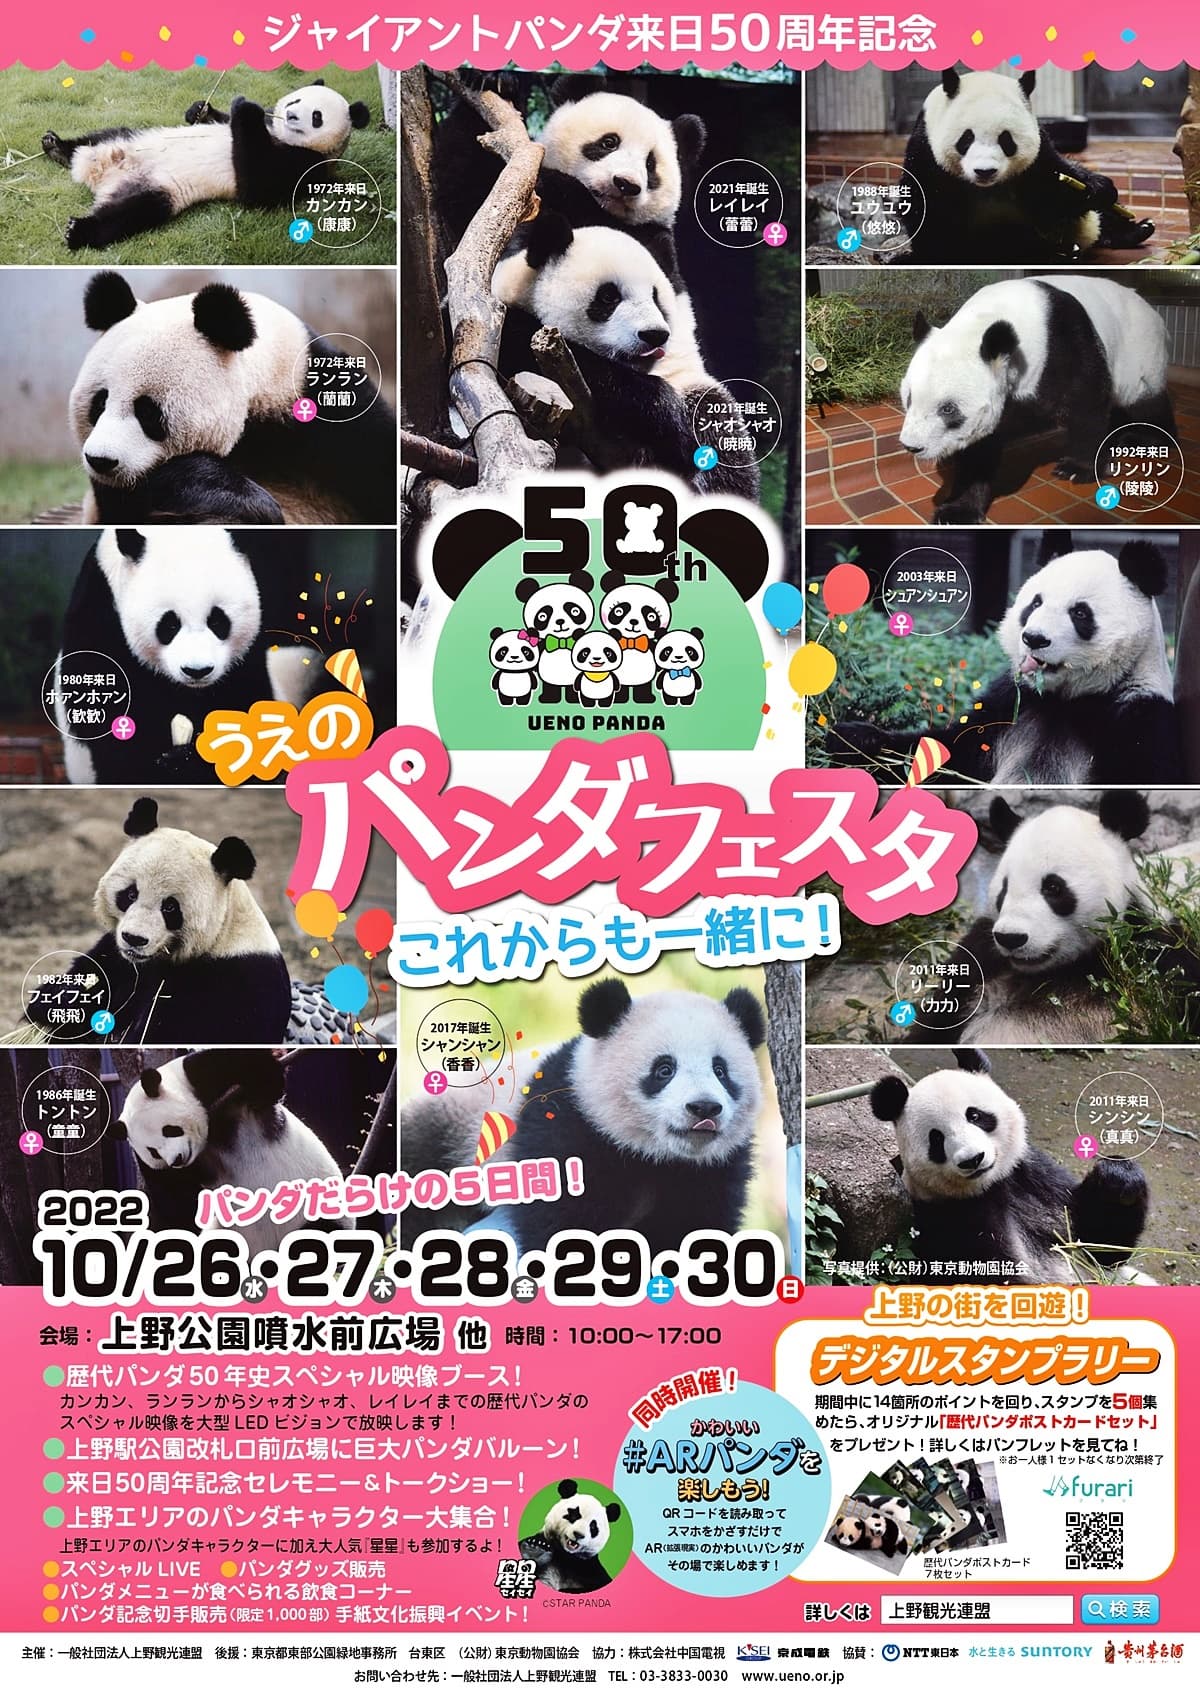 "上野公園で開催されるARで手のりパンダなどが楽しめるイベント「うえのパンダフェスタ」のメインビジュアル”